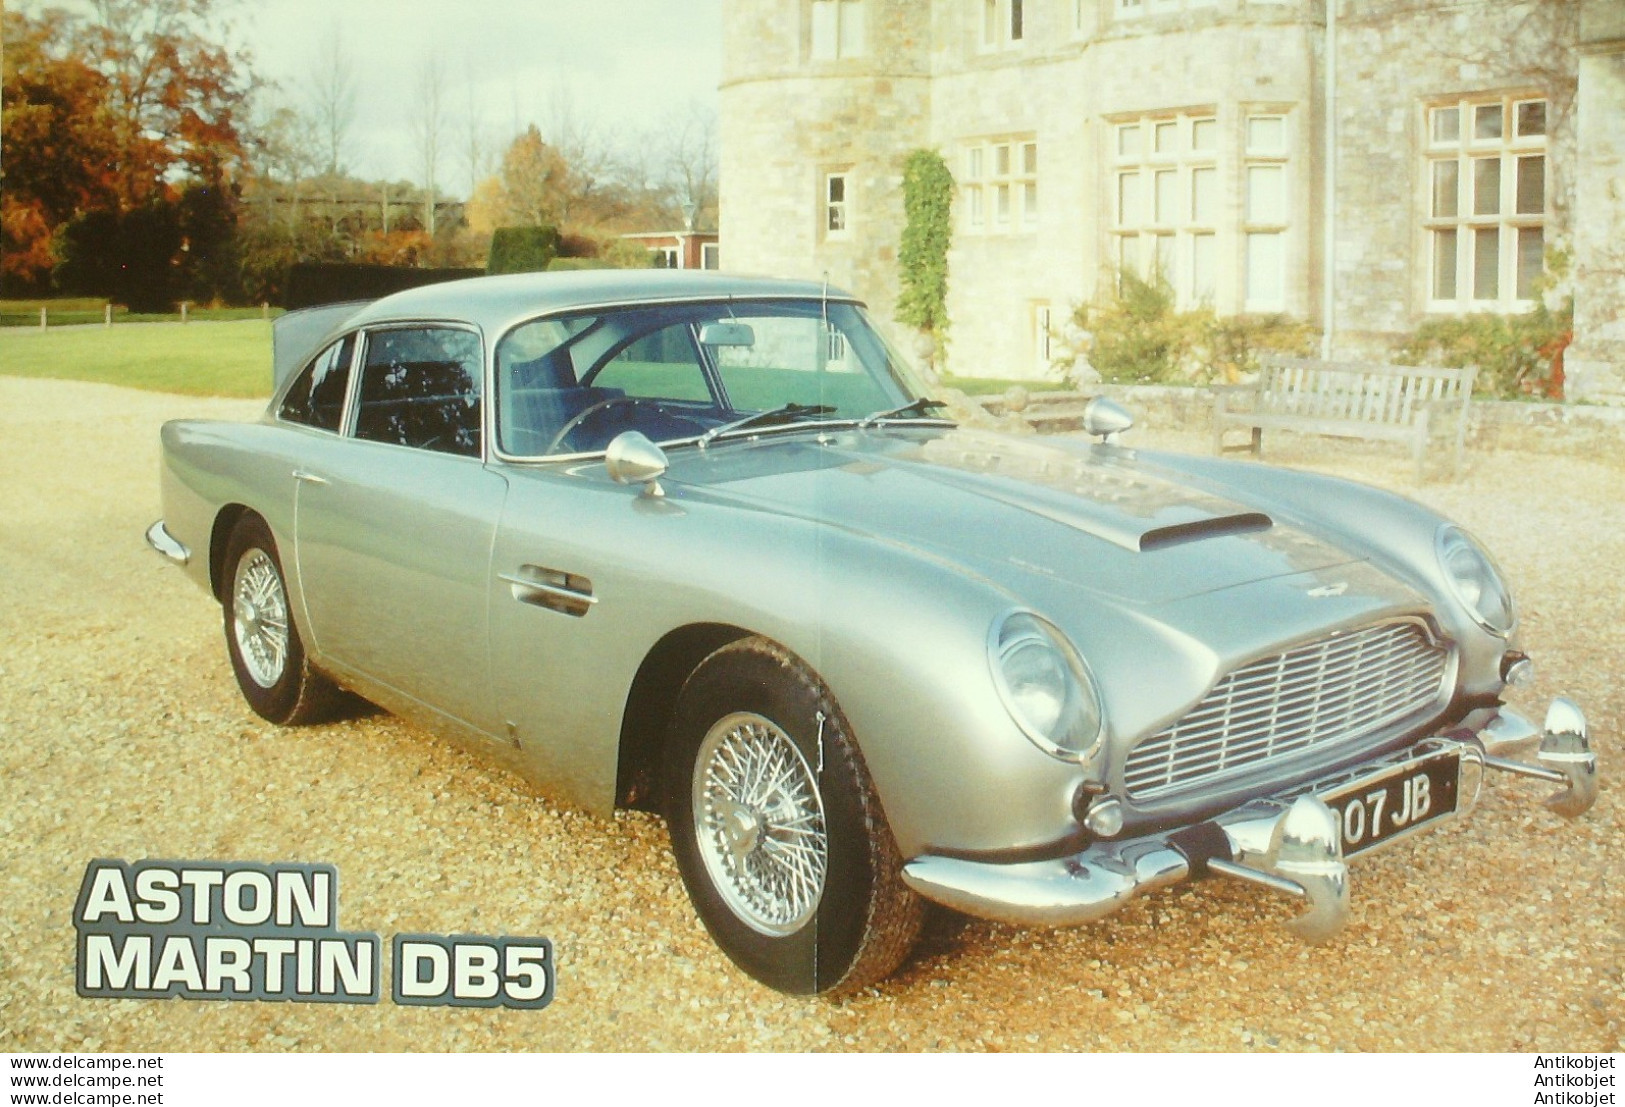 James Bond 007 Aston Martin DB5 Voiture De  Goldfinger édition Hachette - Histoire